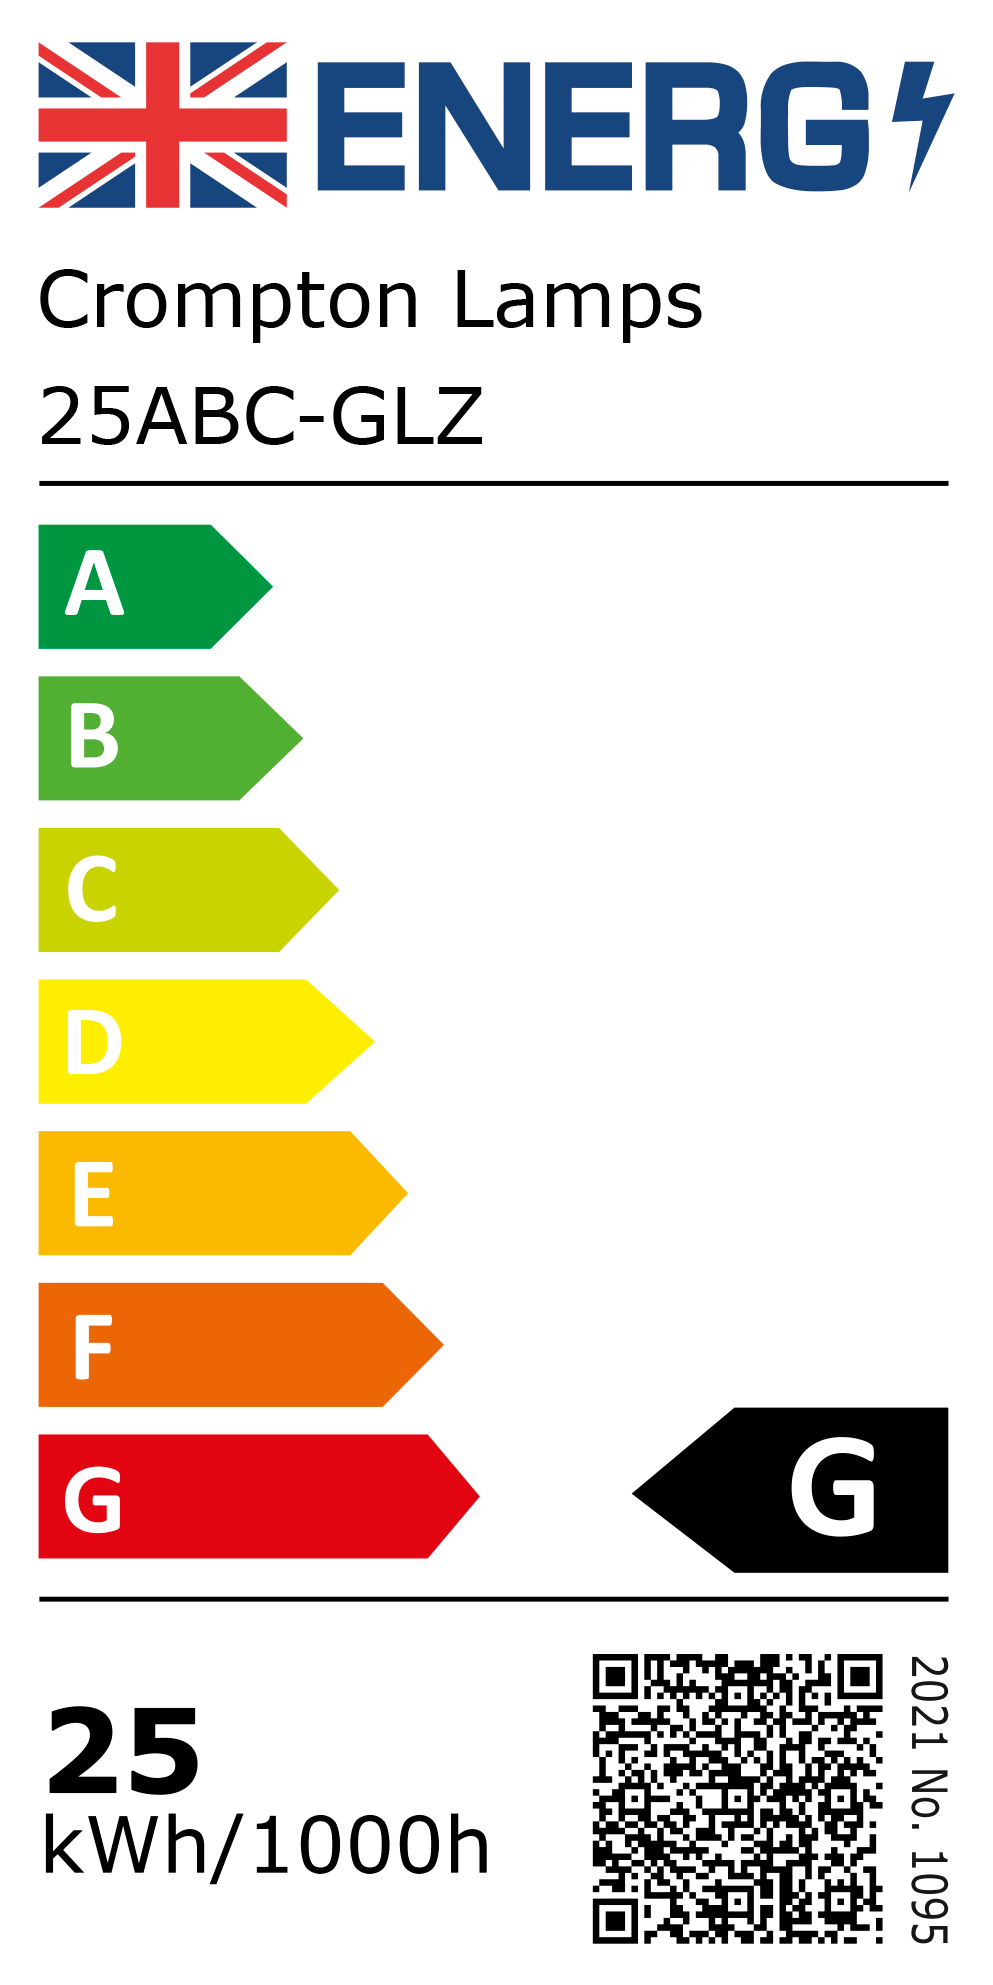 New 2021 Energy Rating Label: Stock Code 25ABC-GLZ